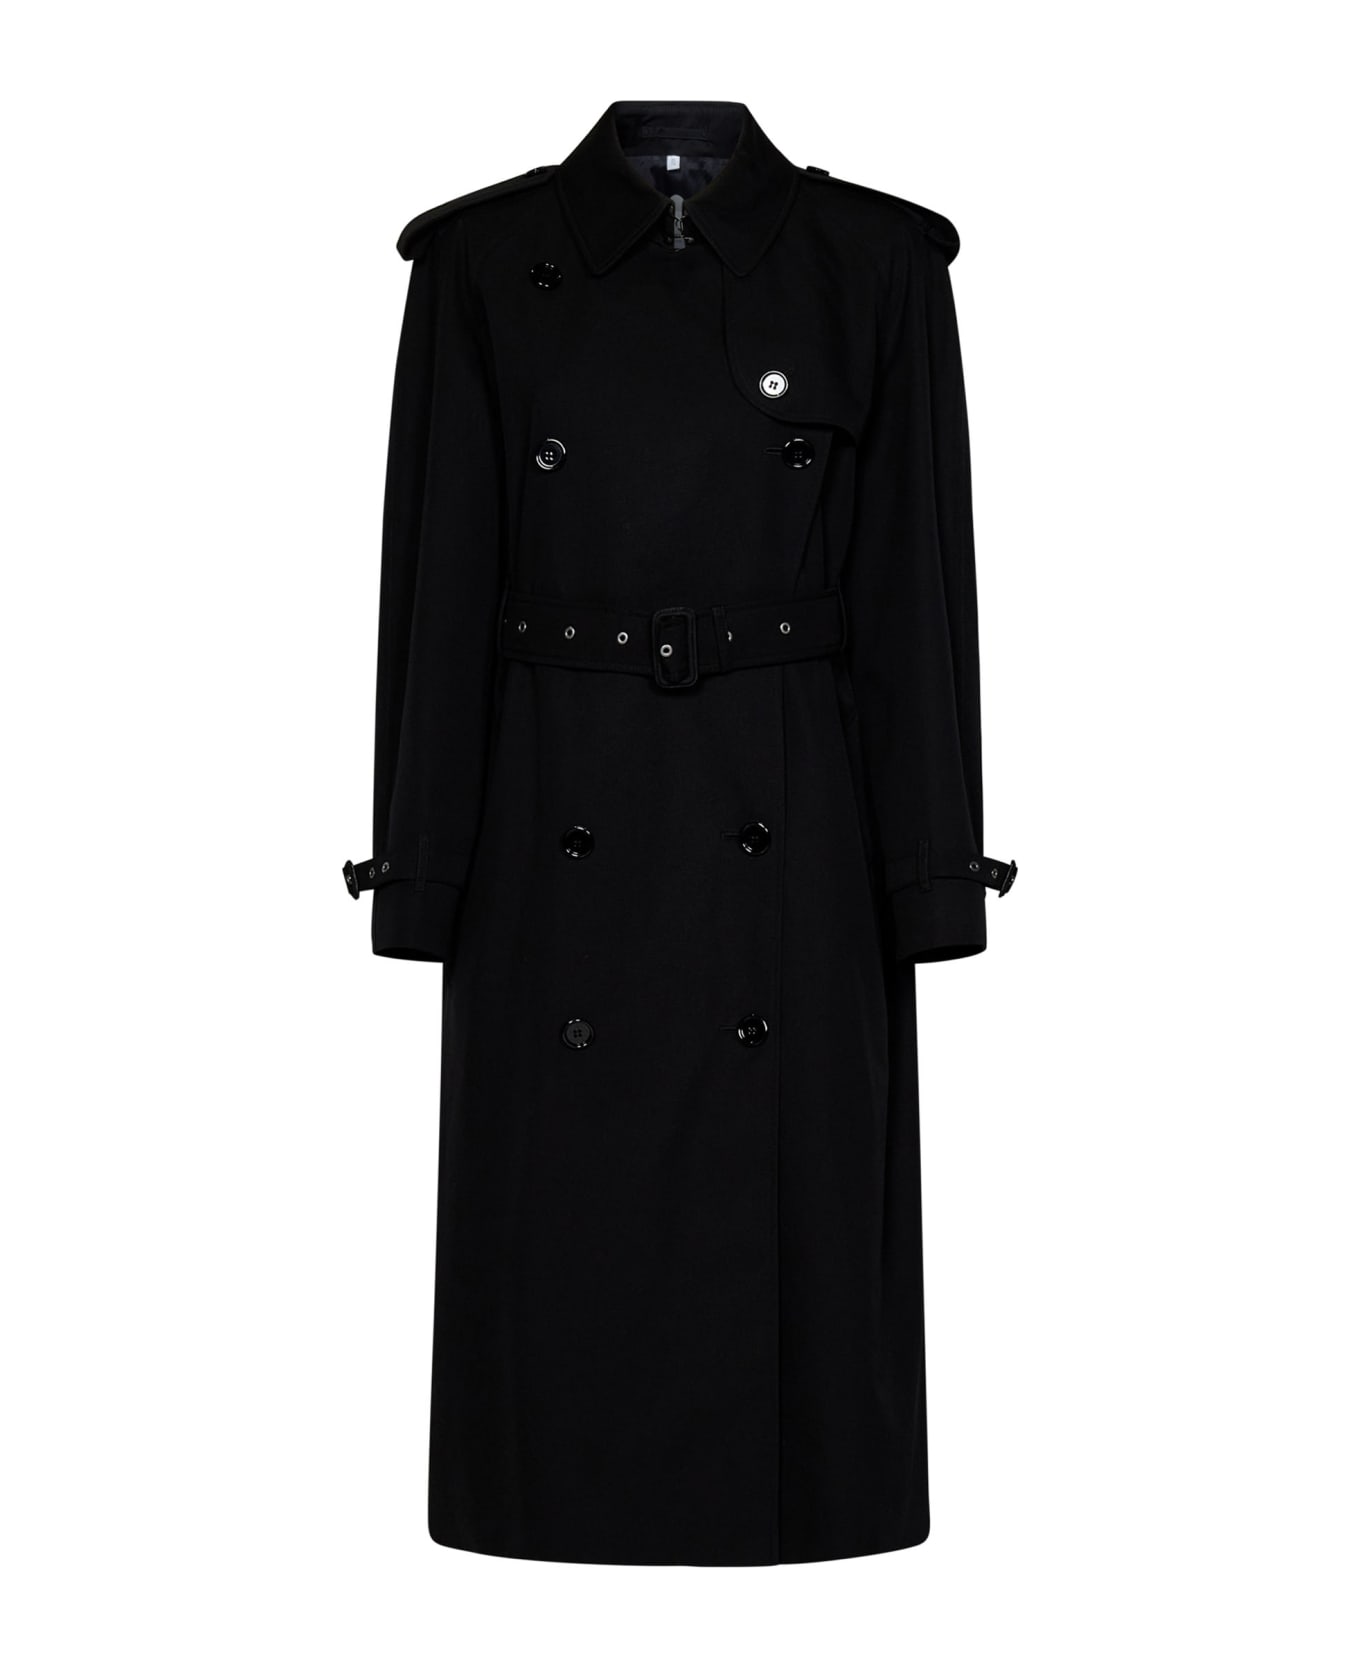 Burberry Trench Coat - Black ジャケット